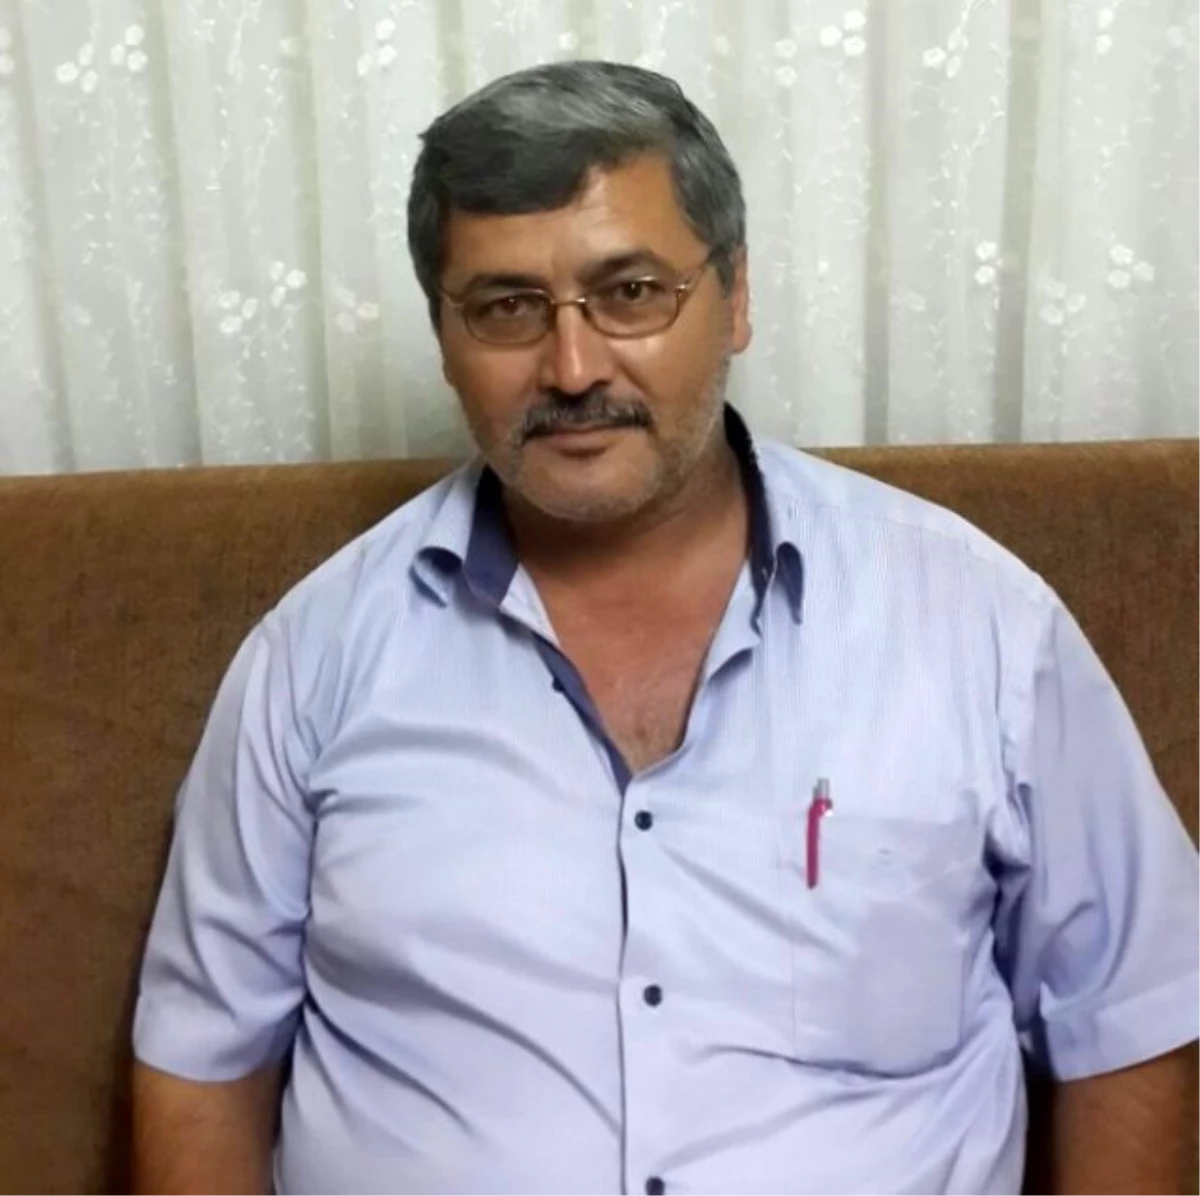 MHP Ortaca İlçe Başkanı Sadık Gün; "15 Temmuz Kapkara Gecedir"